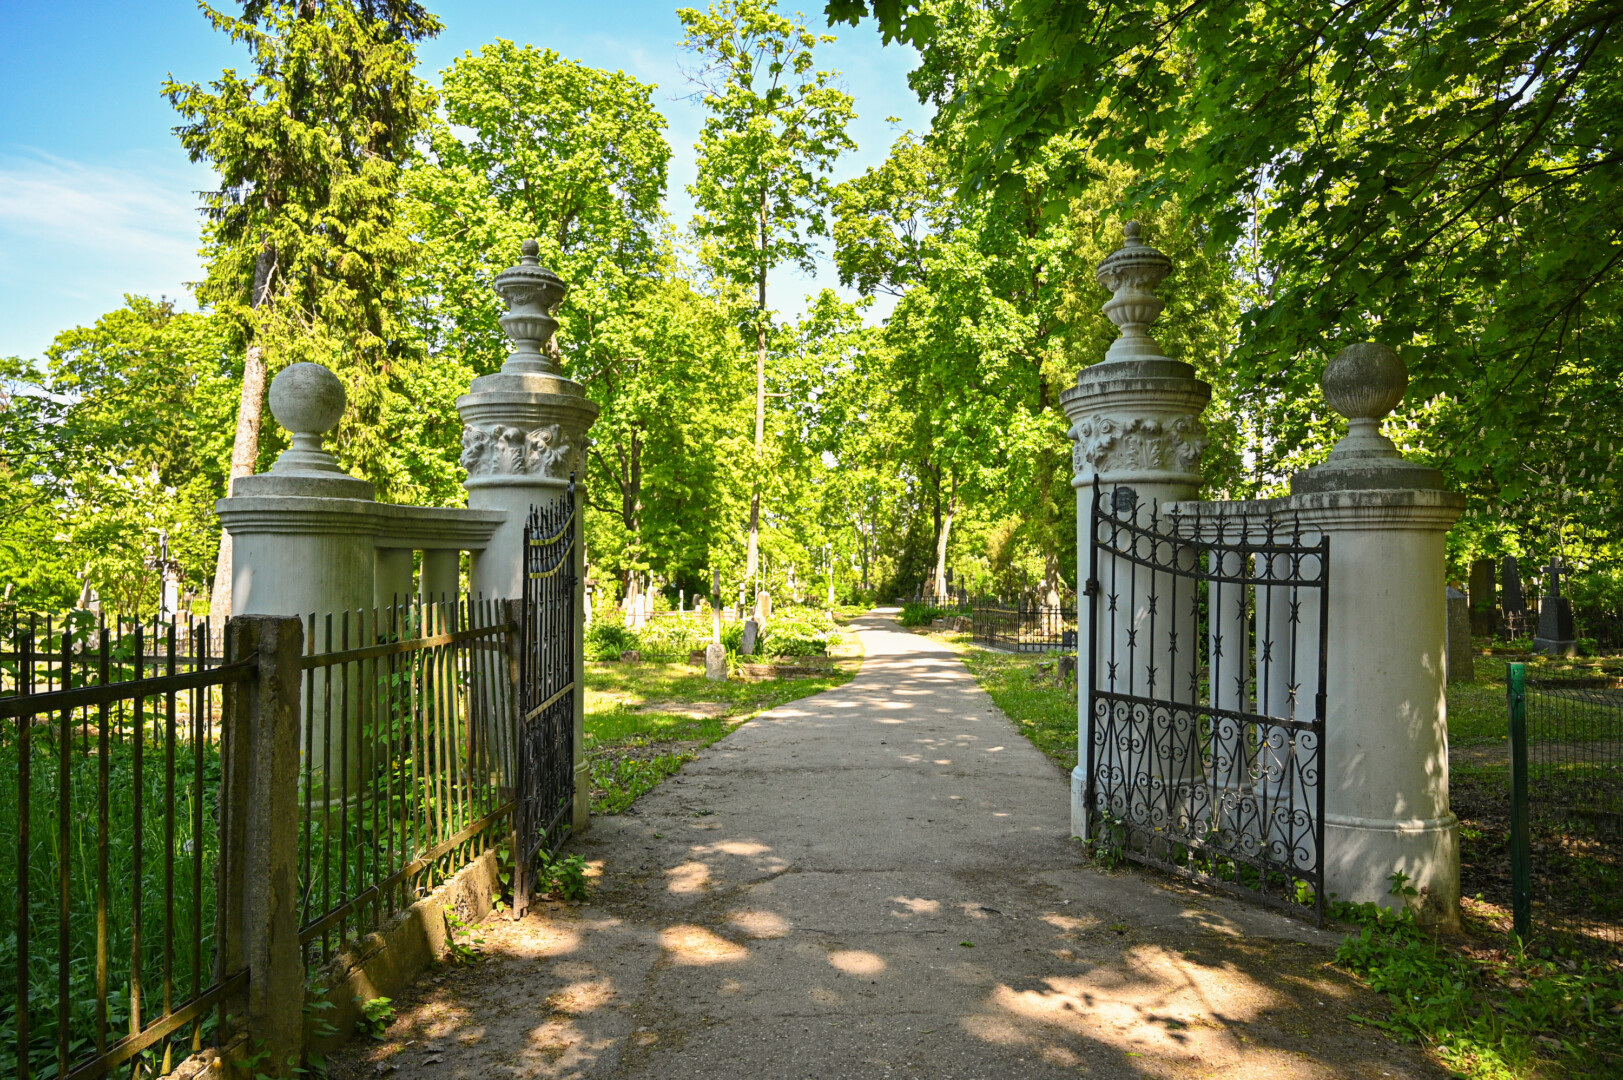 Apmąstymui ir susikaupimui nuteikia įėjimas į senąsias kapines – į jas veda dveji įspūdingi vartai, kuriuos sukūrė Panevėžyje gyvenę Juškevičių giminės skulptoriai. P. ŽIDONIO nuotr.